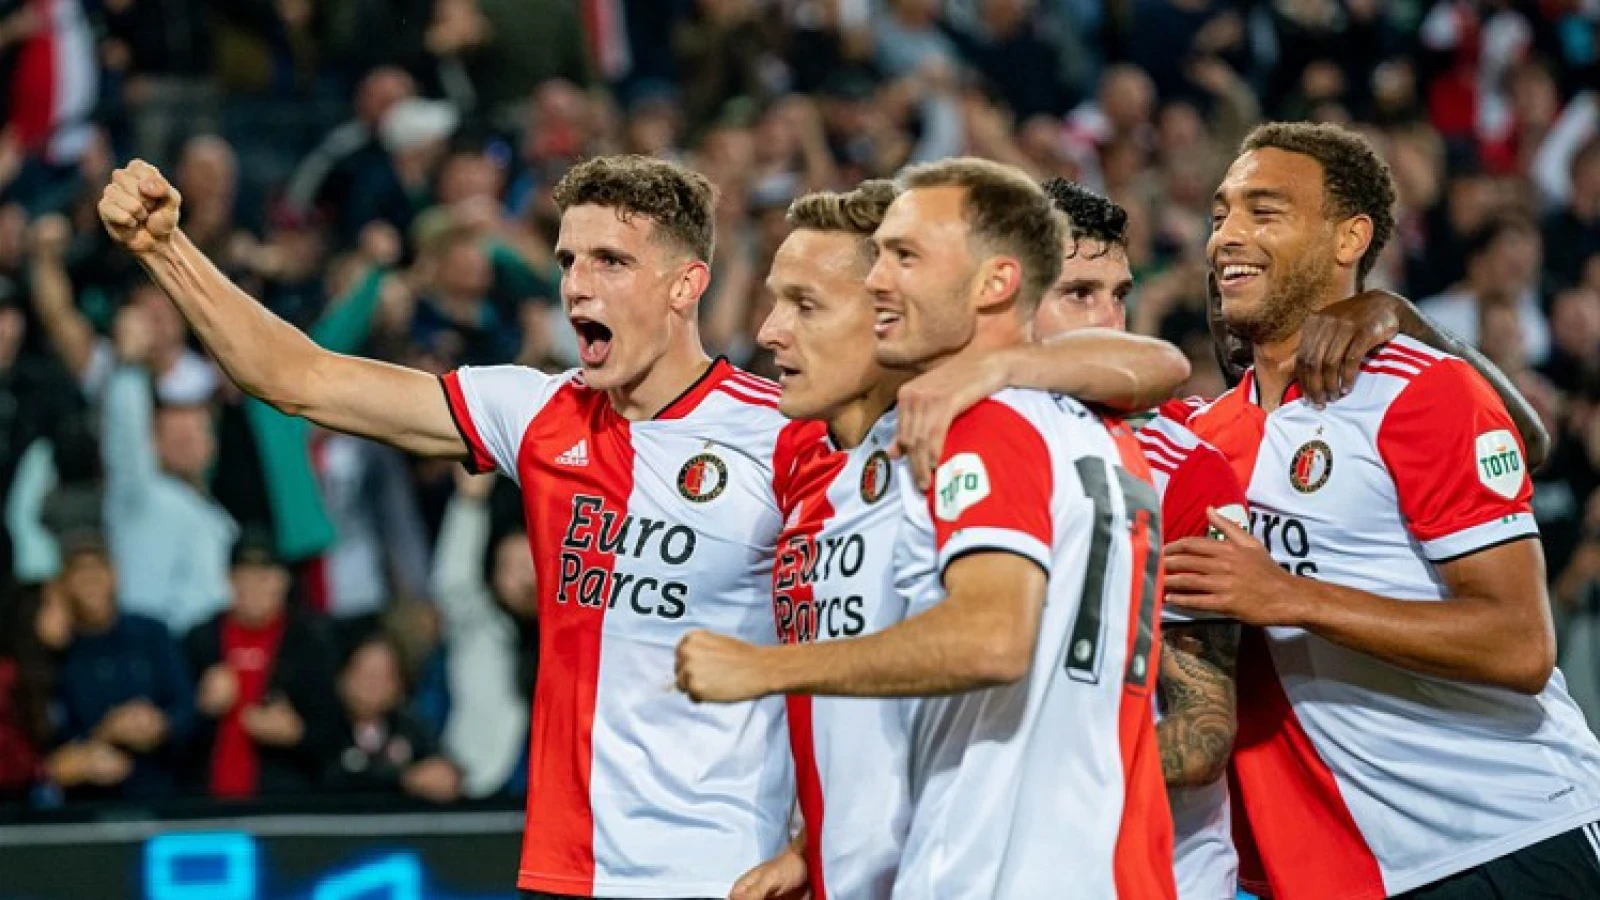 De kranten: 'Feyenoord dendert nu door'